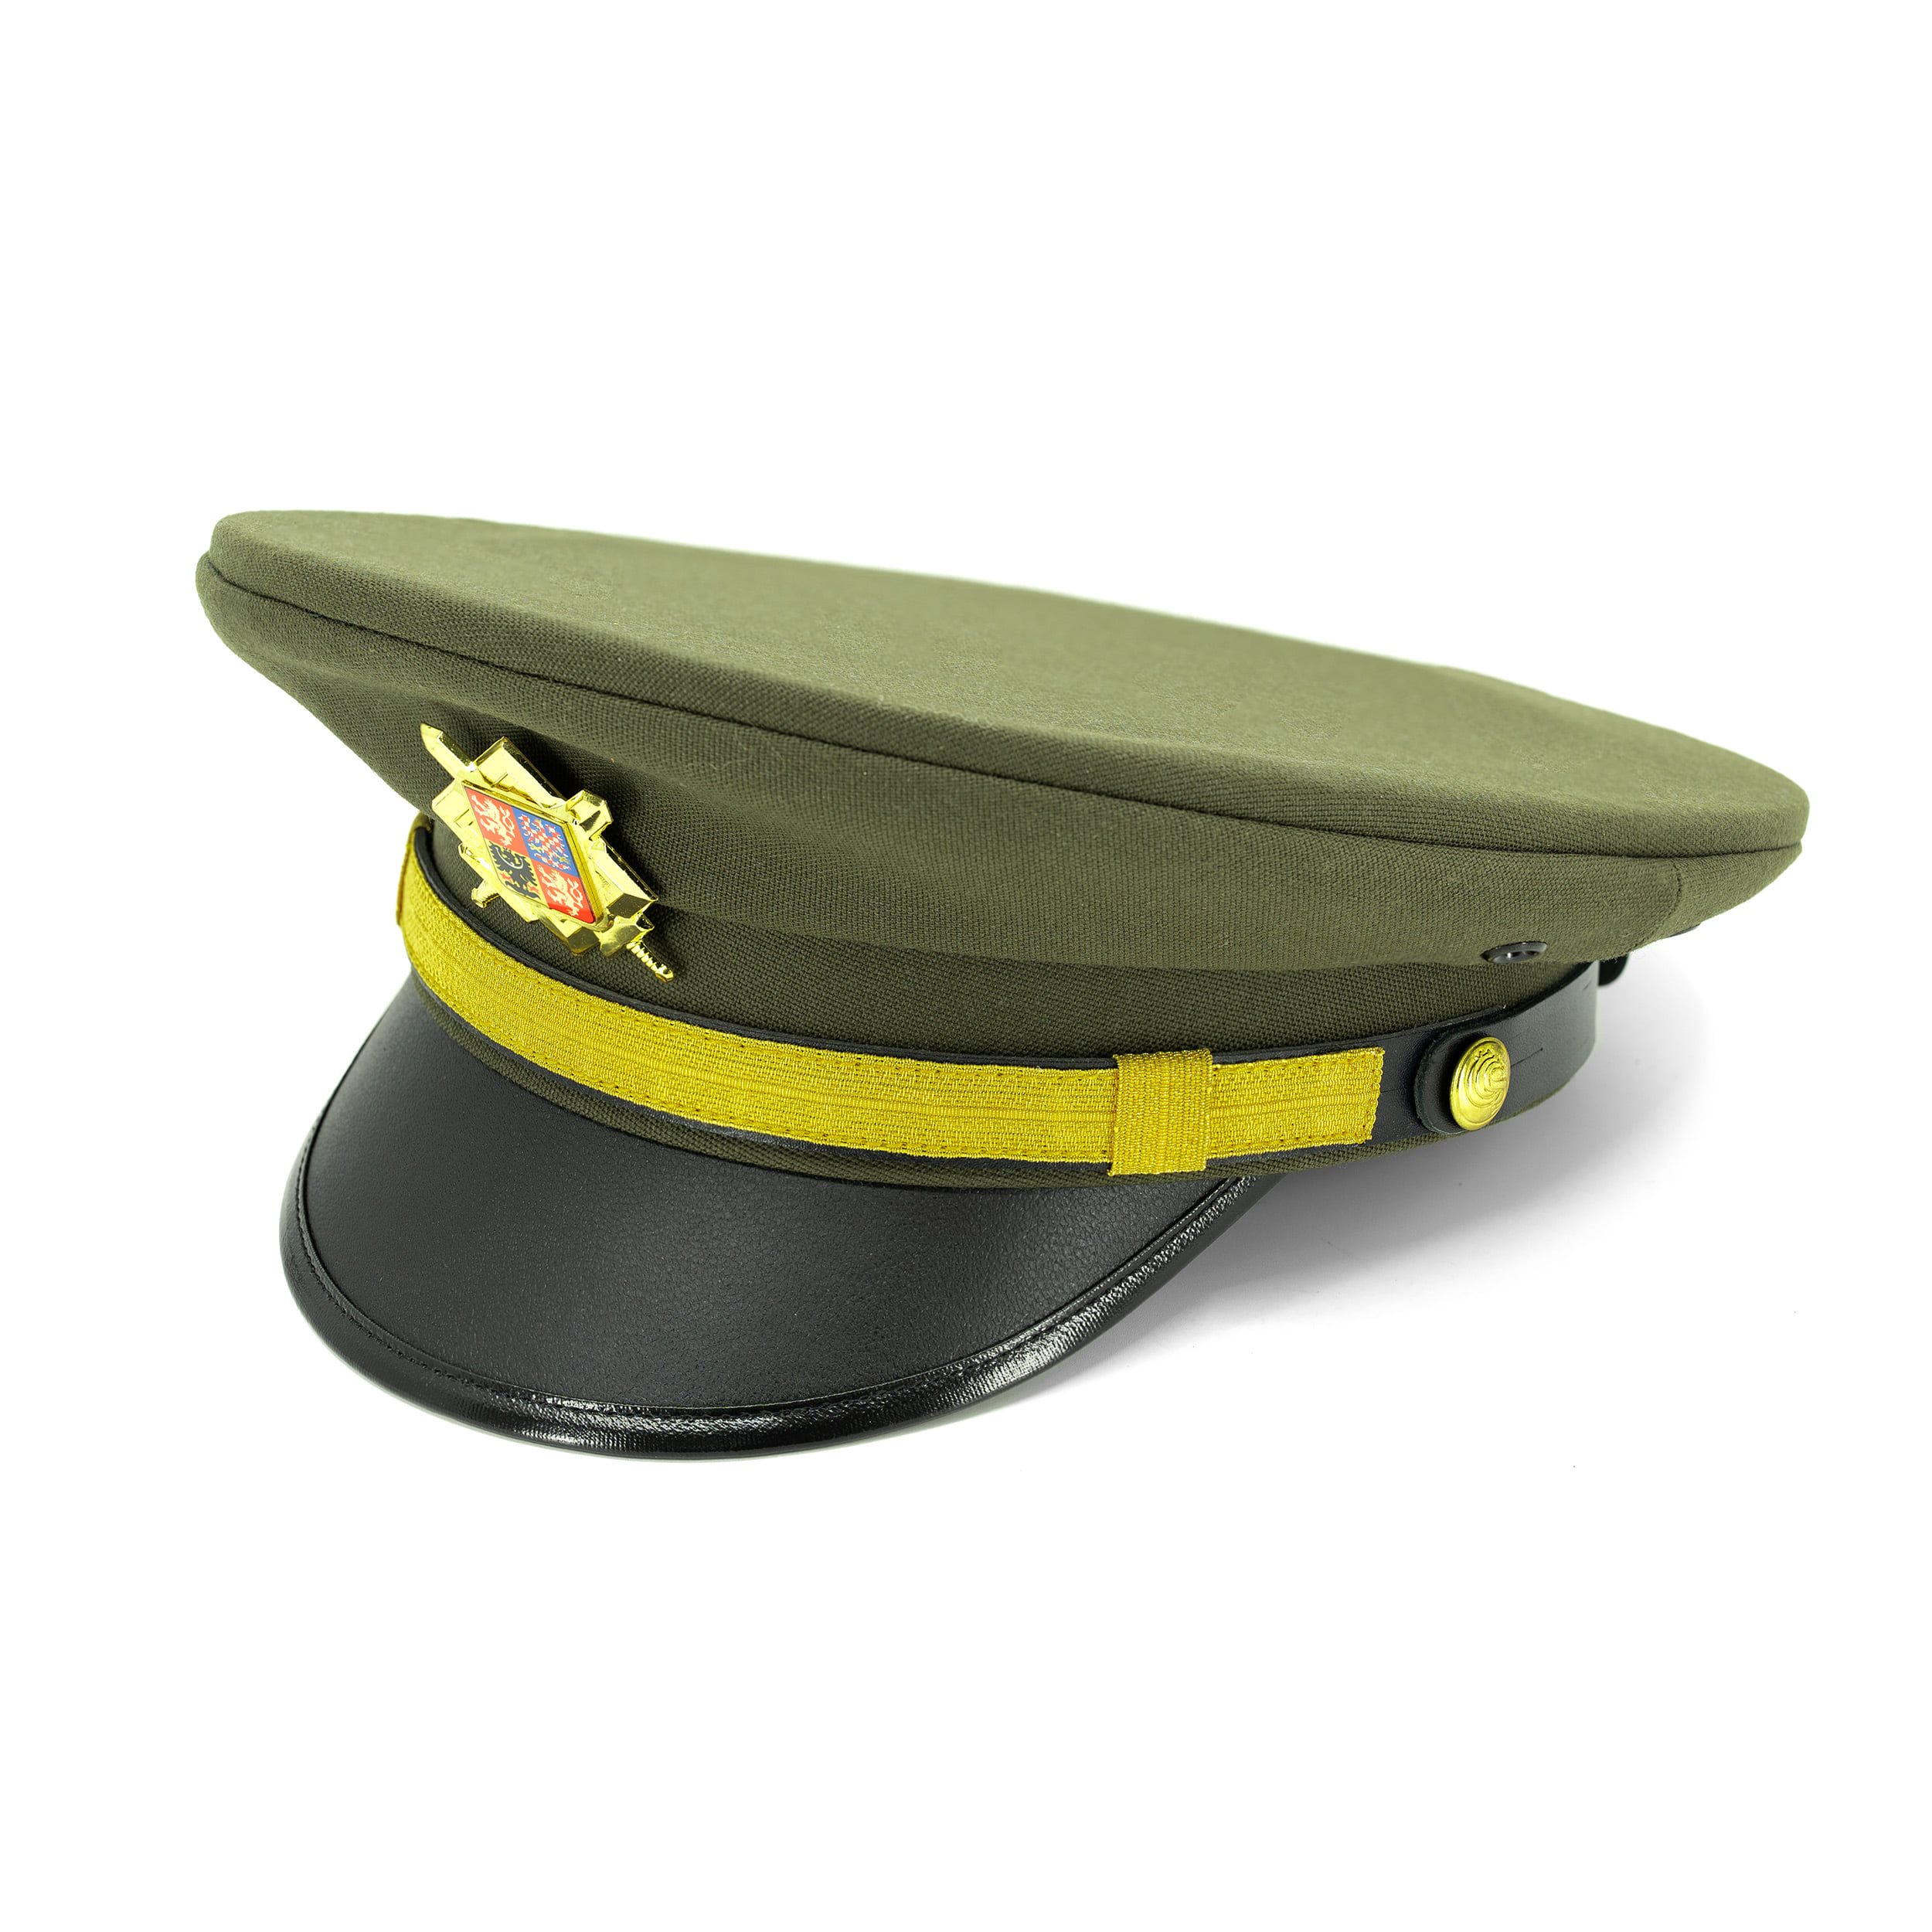 Mütze / Brigadiermütze CS goldenes Abzeichen GRÜN Tschechische Armee  816019 L-11